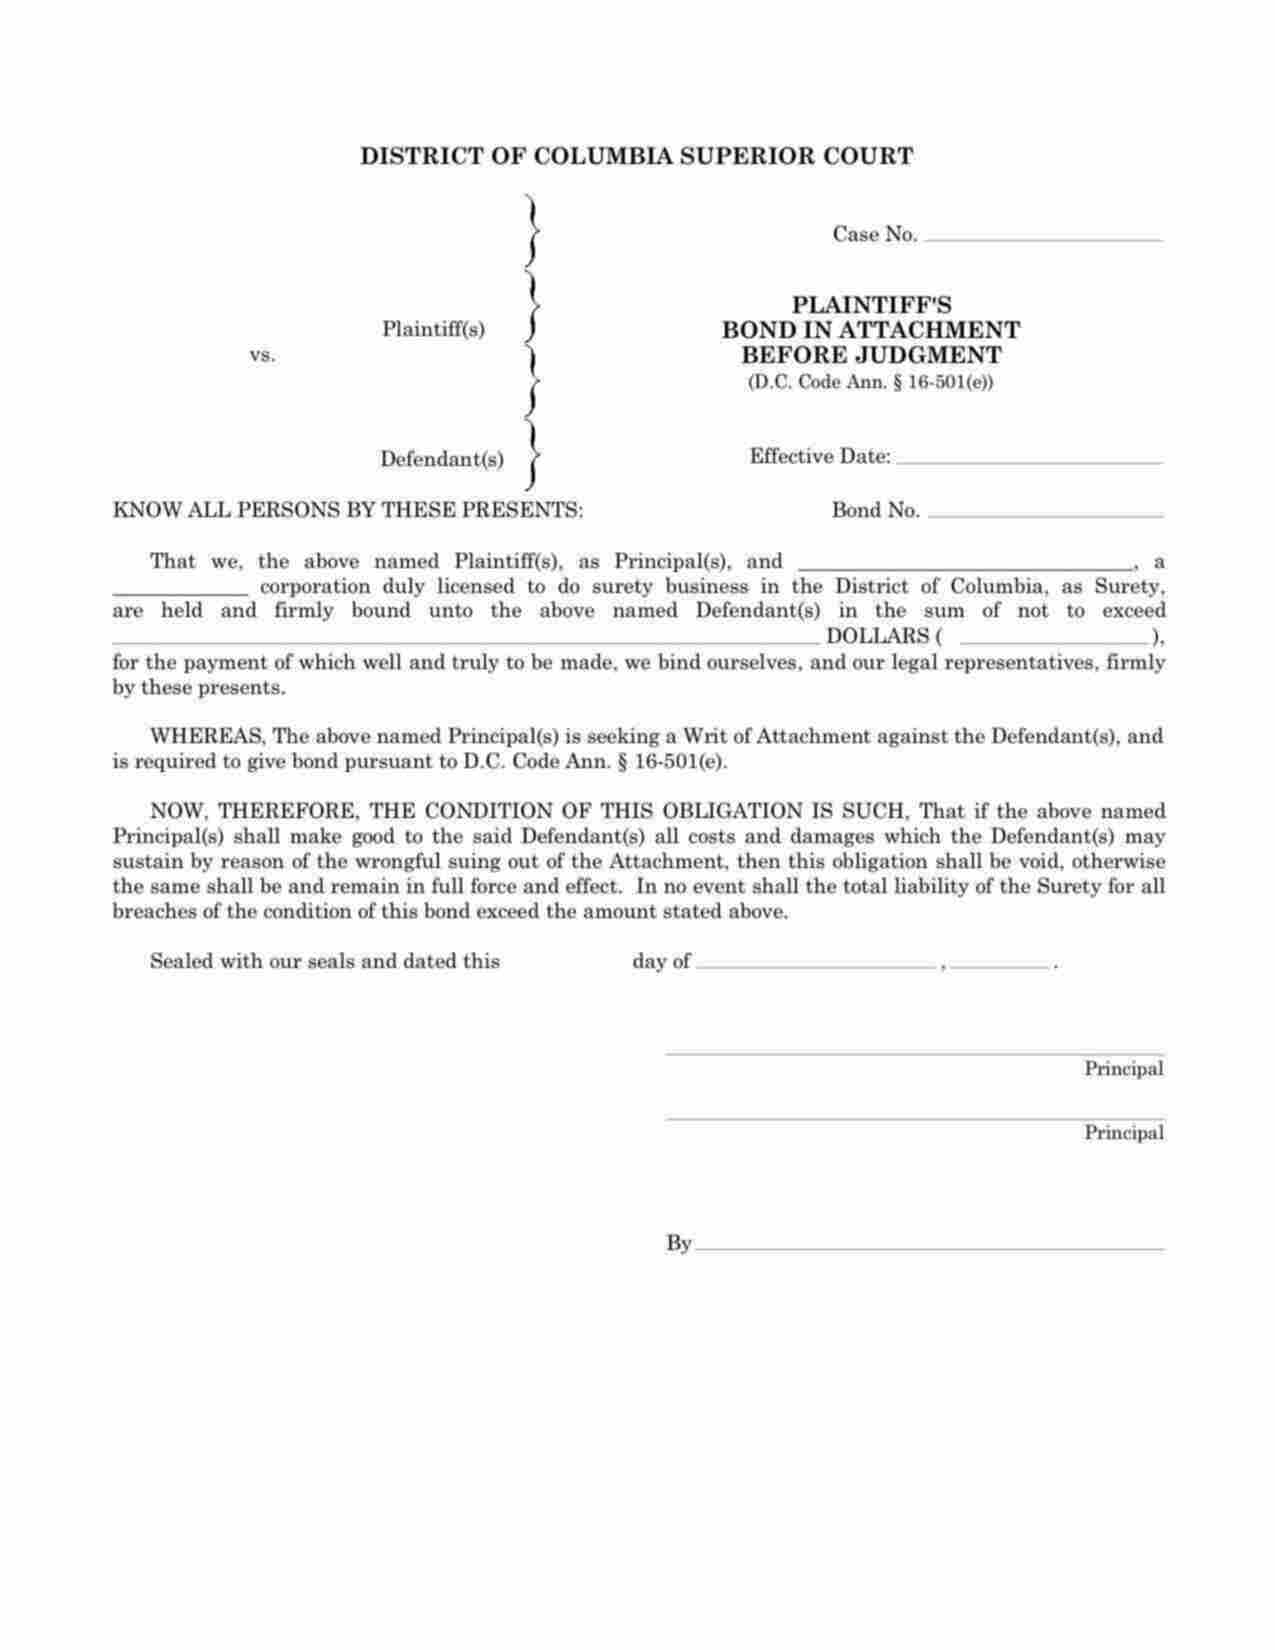 District of Columbia Plaintiffs Attachment Before Judgement Bond Form